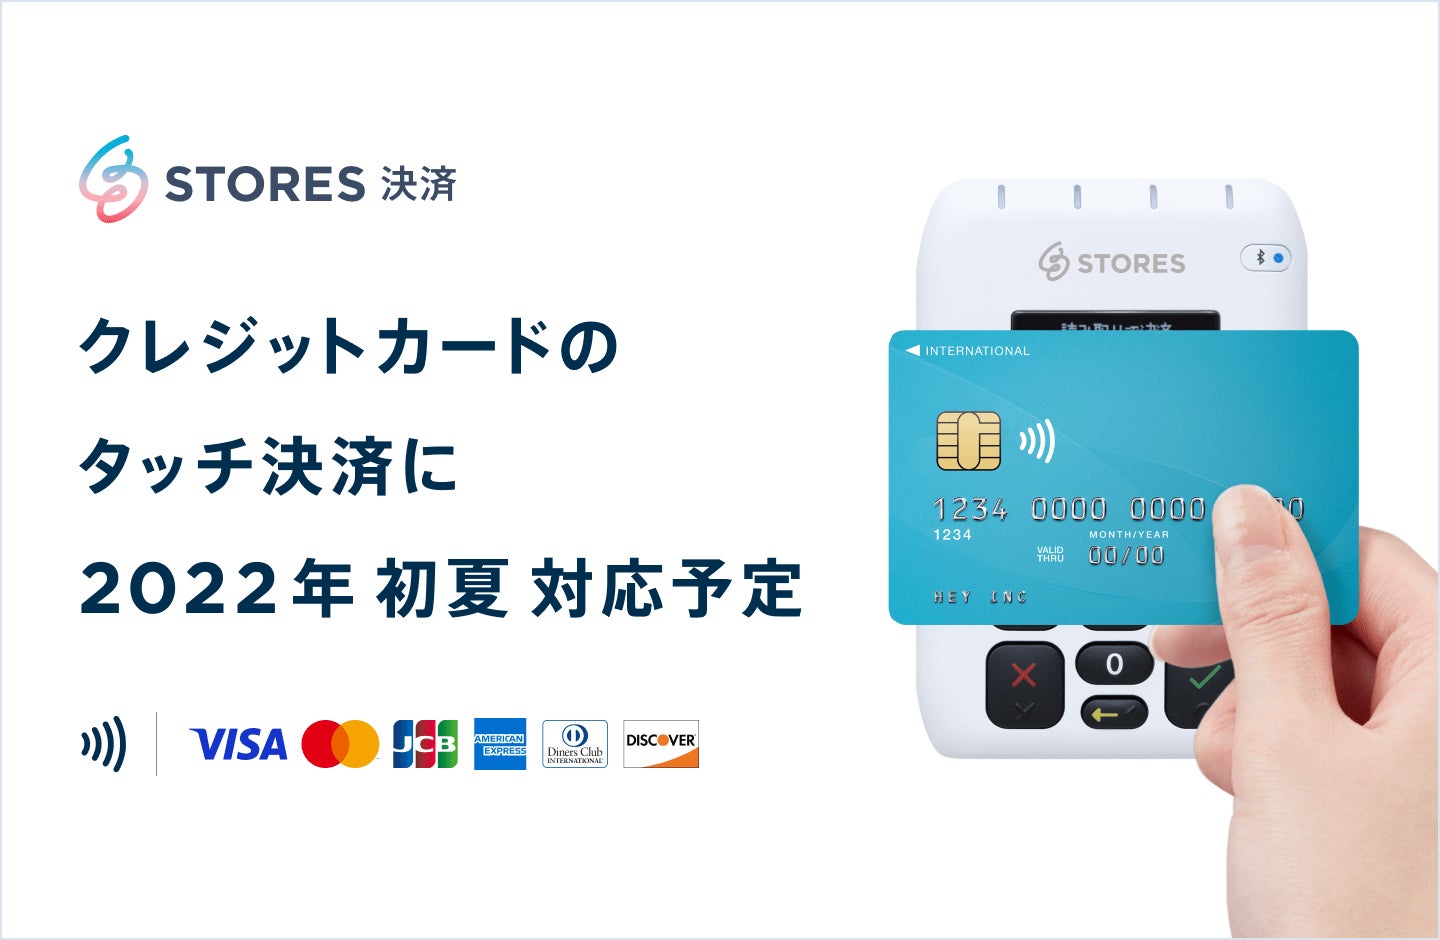 STORES 決済、クレジットカードのタッチ決済（NFC）に2022年初夏対応予定